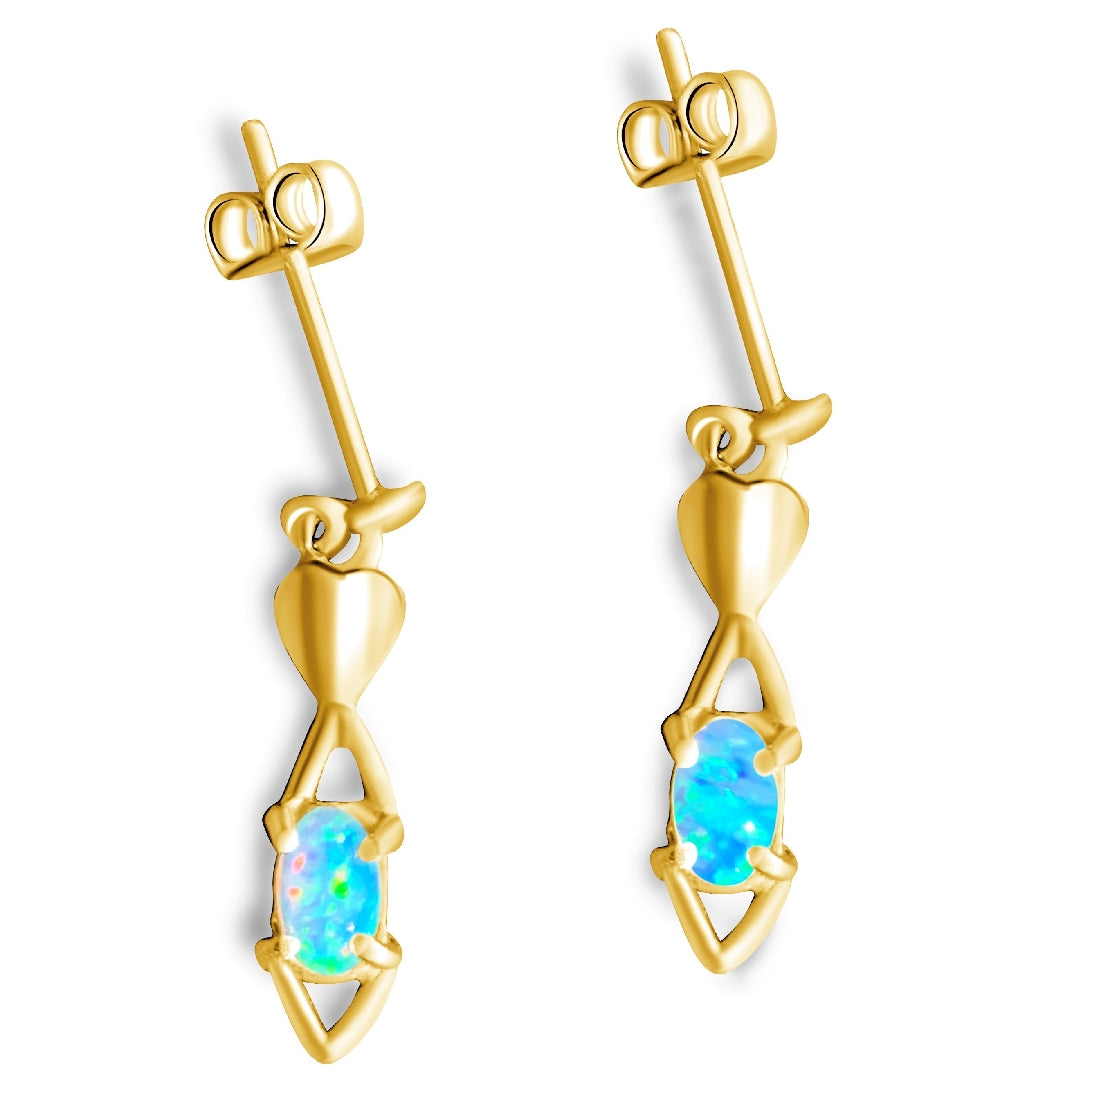 18kt Yellow Gold drop earrings with Crystal Opal 5x3mm - Masterpiece Jewellery Opal & Gems Sydney Australia | Online Shop